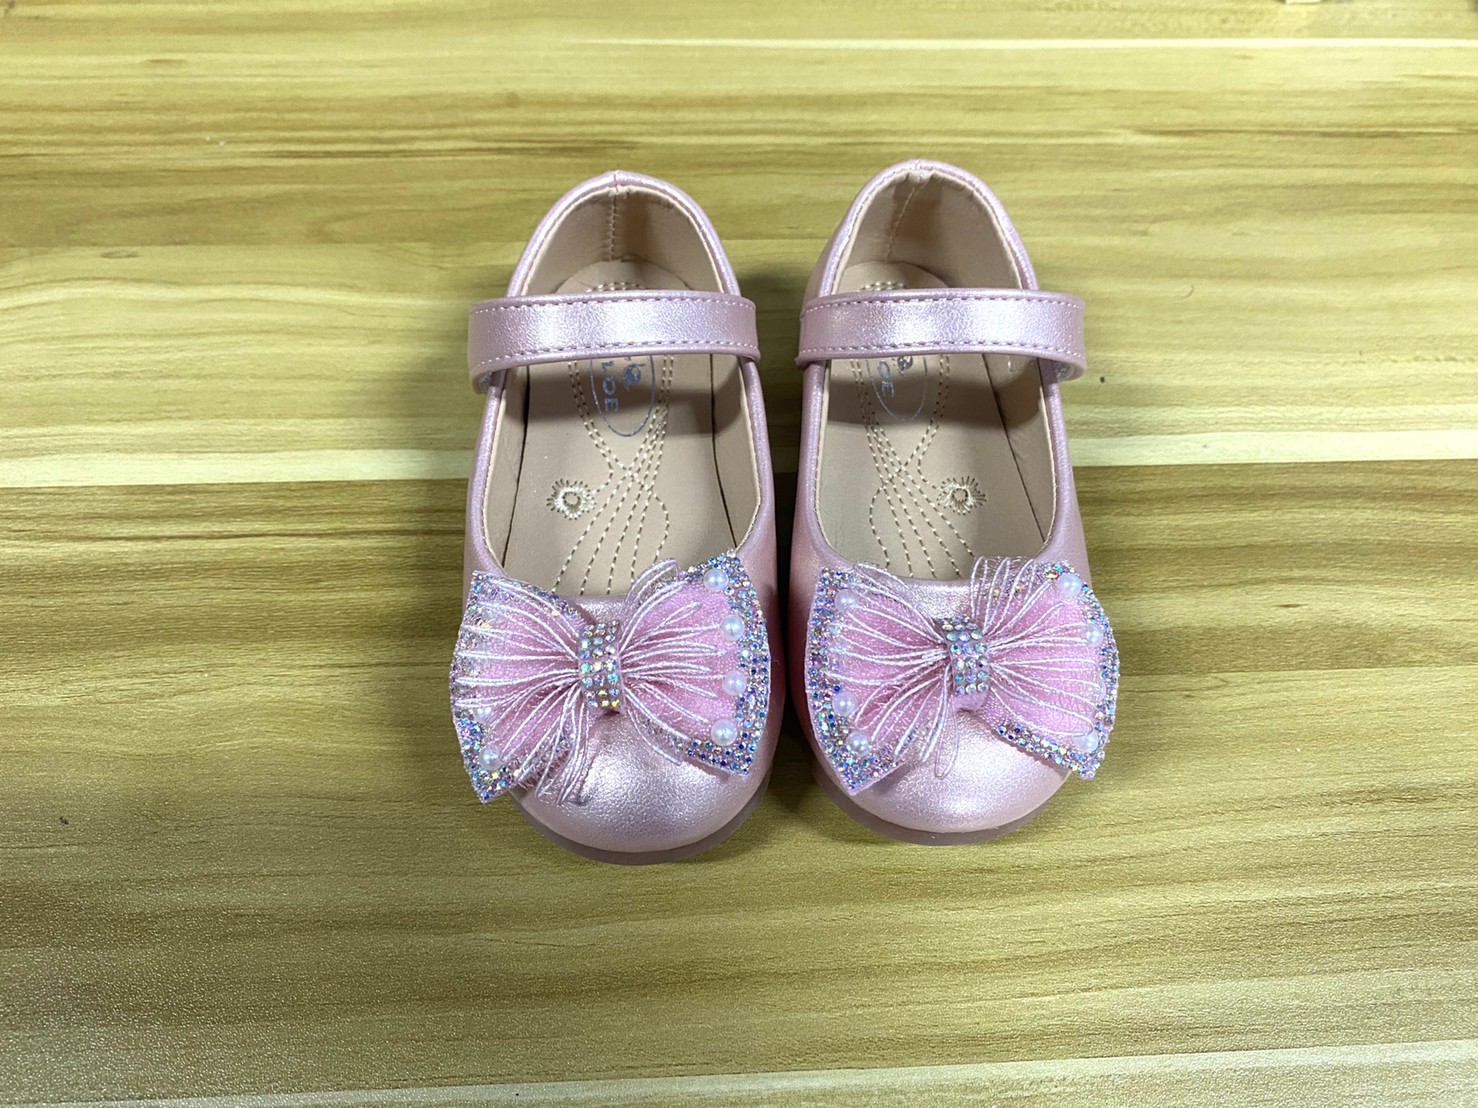 9018 รองเท้าคัทชูเด็กหญิง ส้นเเบนประดับโบว์ หนังนิ่ม ไซส์ 21-36 มี3สี ขาว ครีม และชมพู